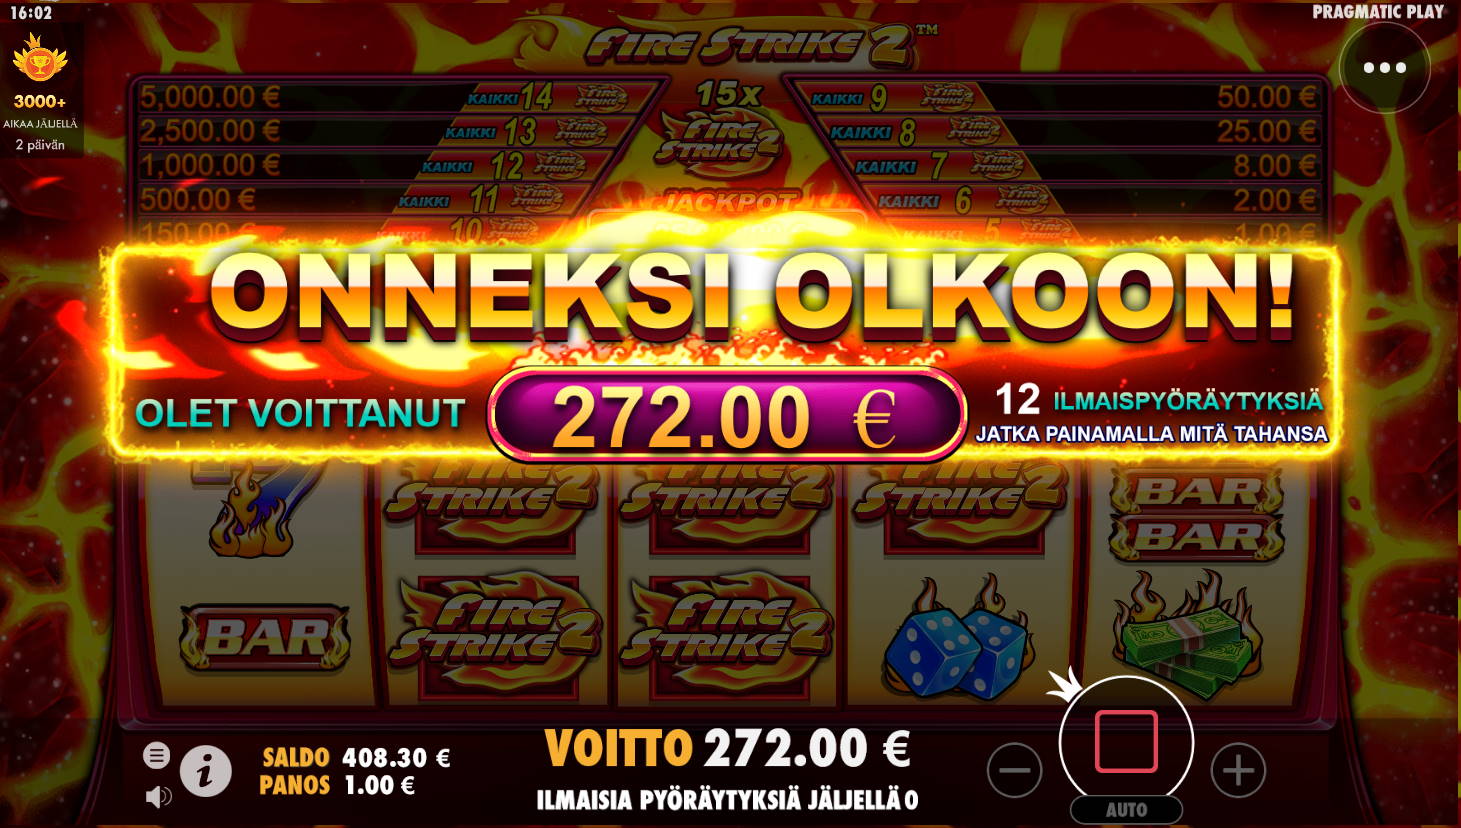 Fire Strike 2 Casino win picture by Kari Grandi 16.5.2022 272e 272X